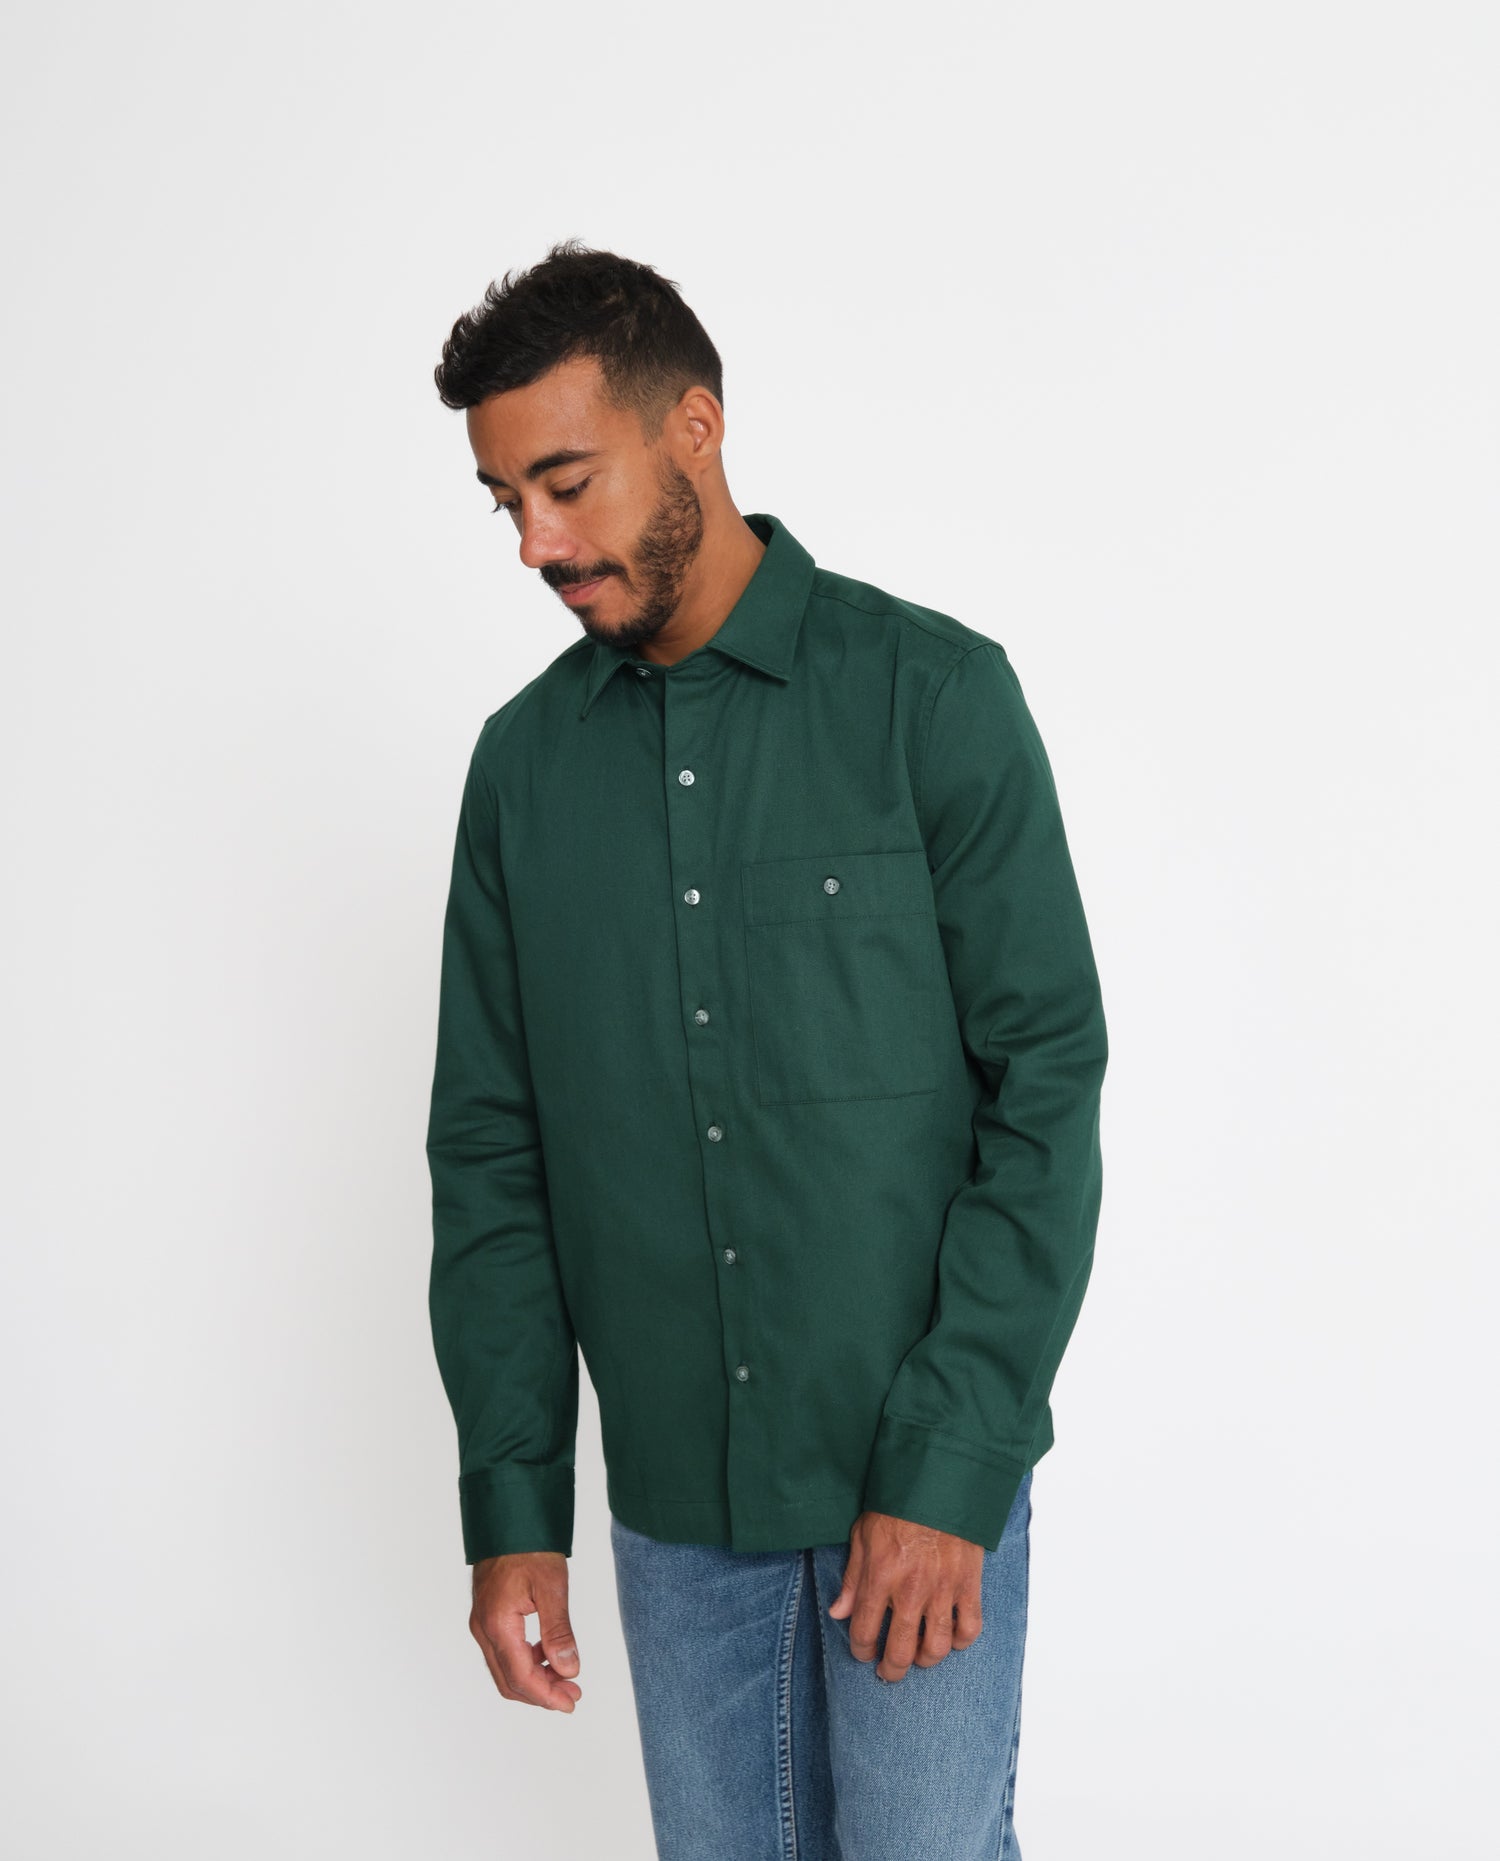 marché commun noyoco chemise homme coton biologique éco-responsable fabriquée en Europe rayée vert jade